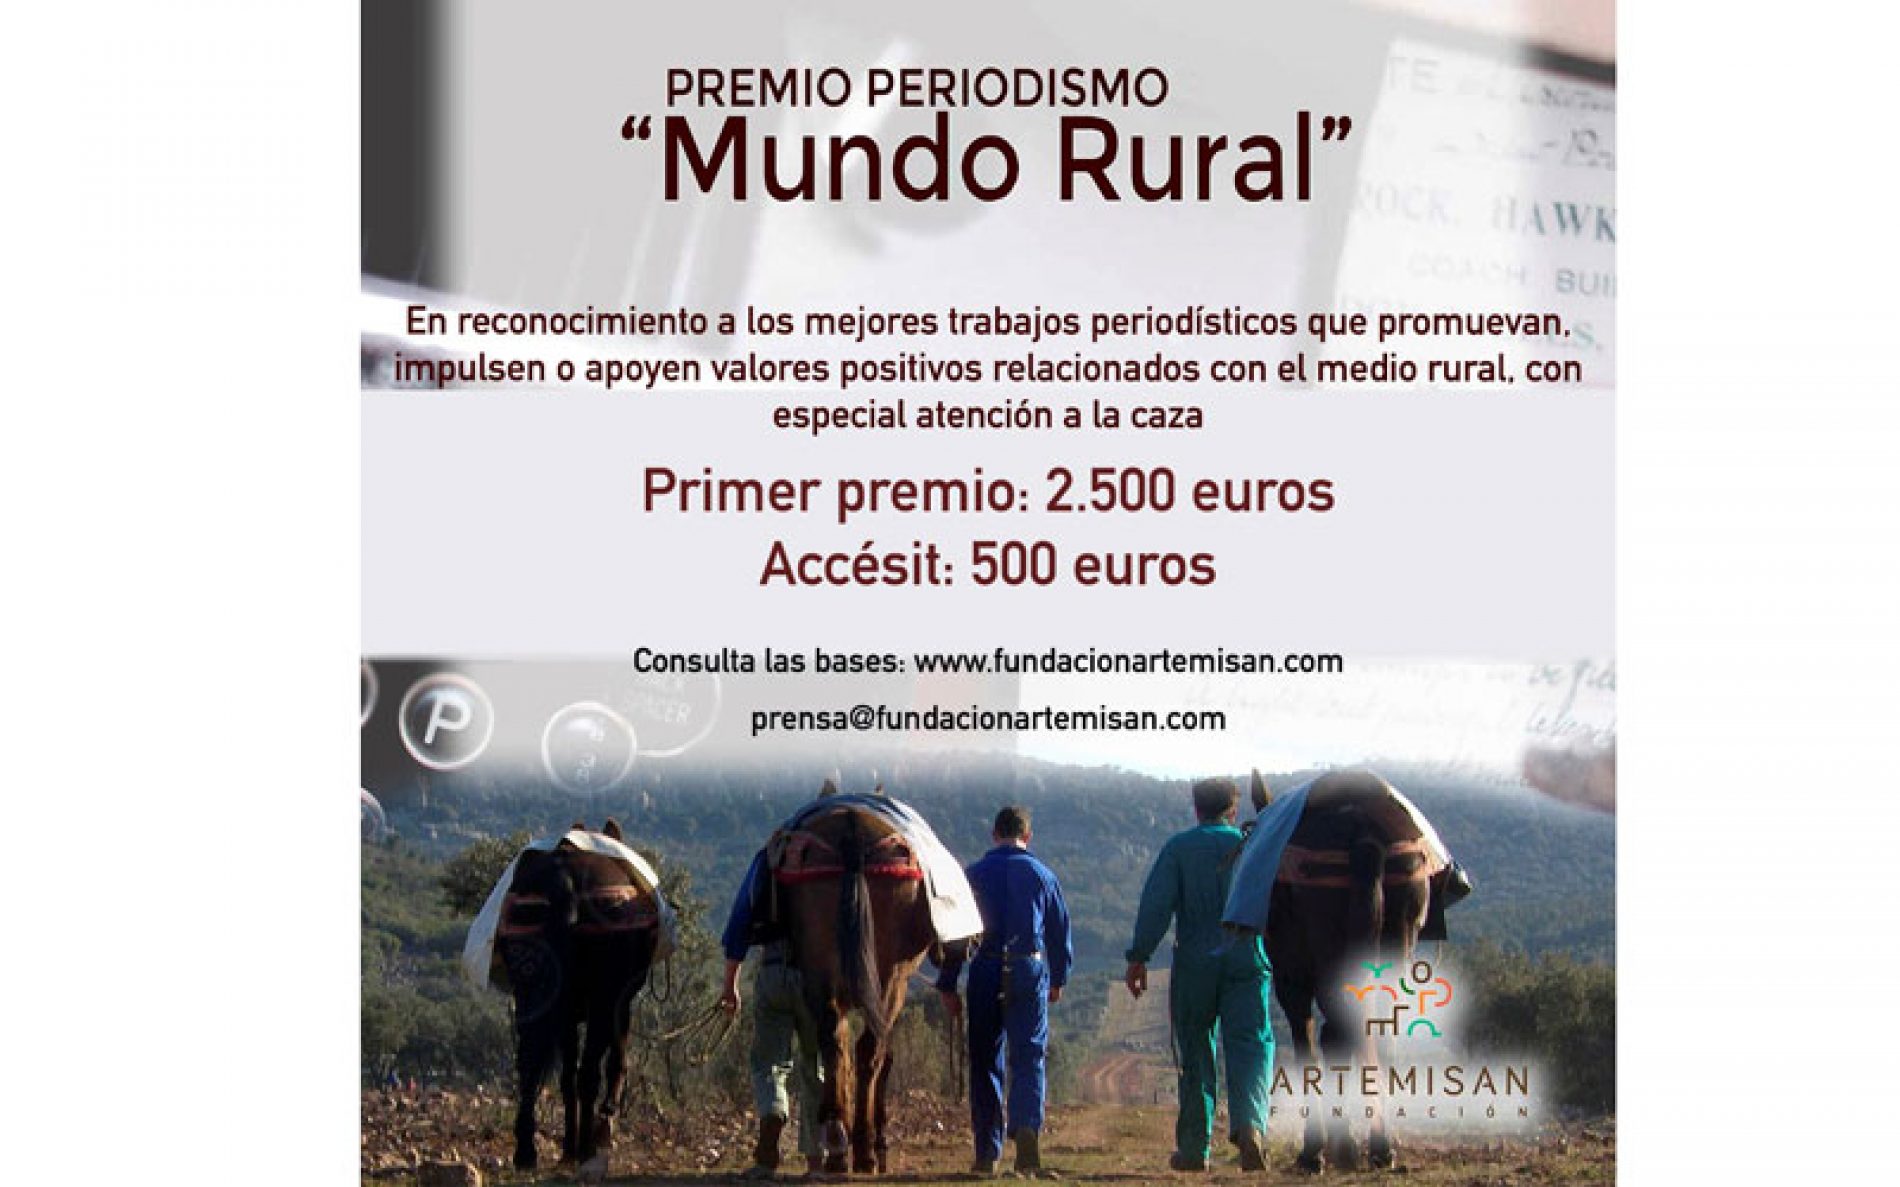 La Fundación Artemisan convoca el Primer Premio de Periodismo ‘Mundo Rural’